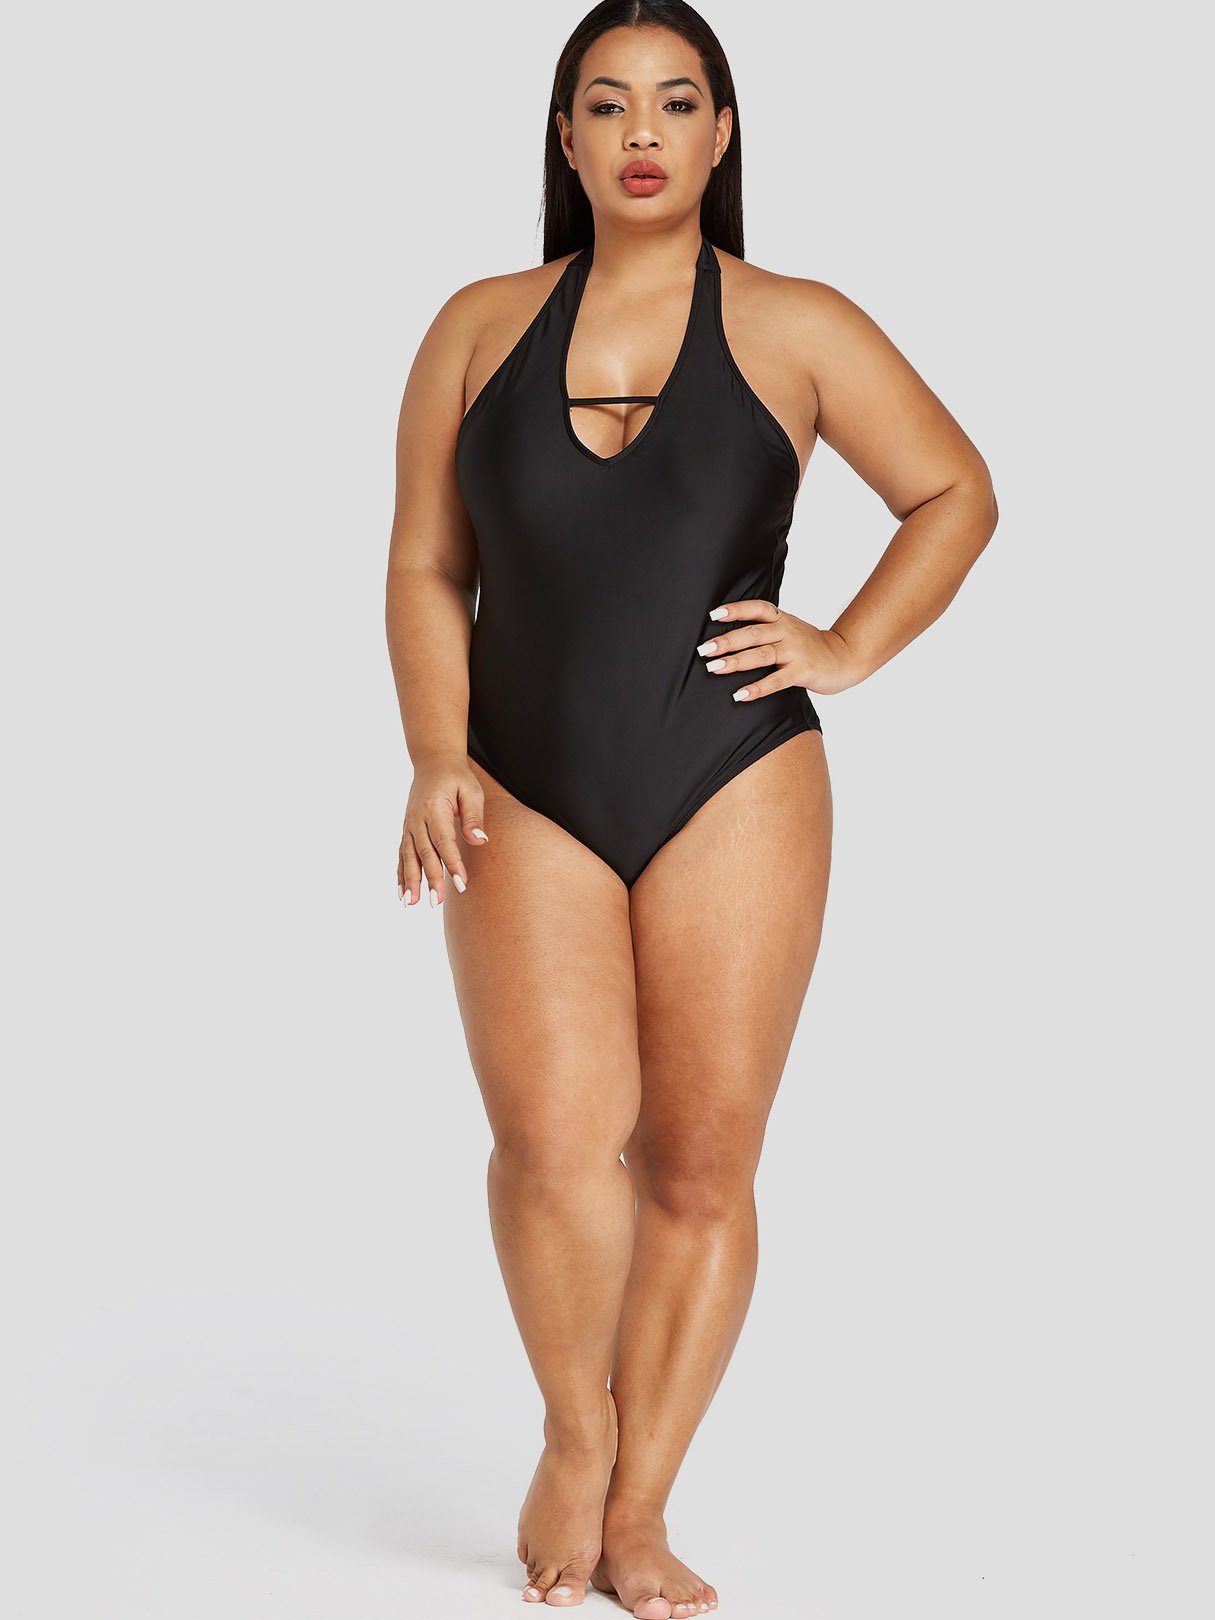 NEW FEELING Womens Black Plus Size Swimwear